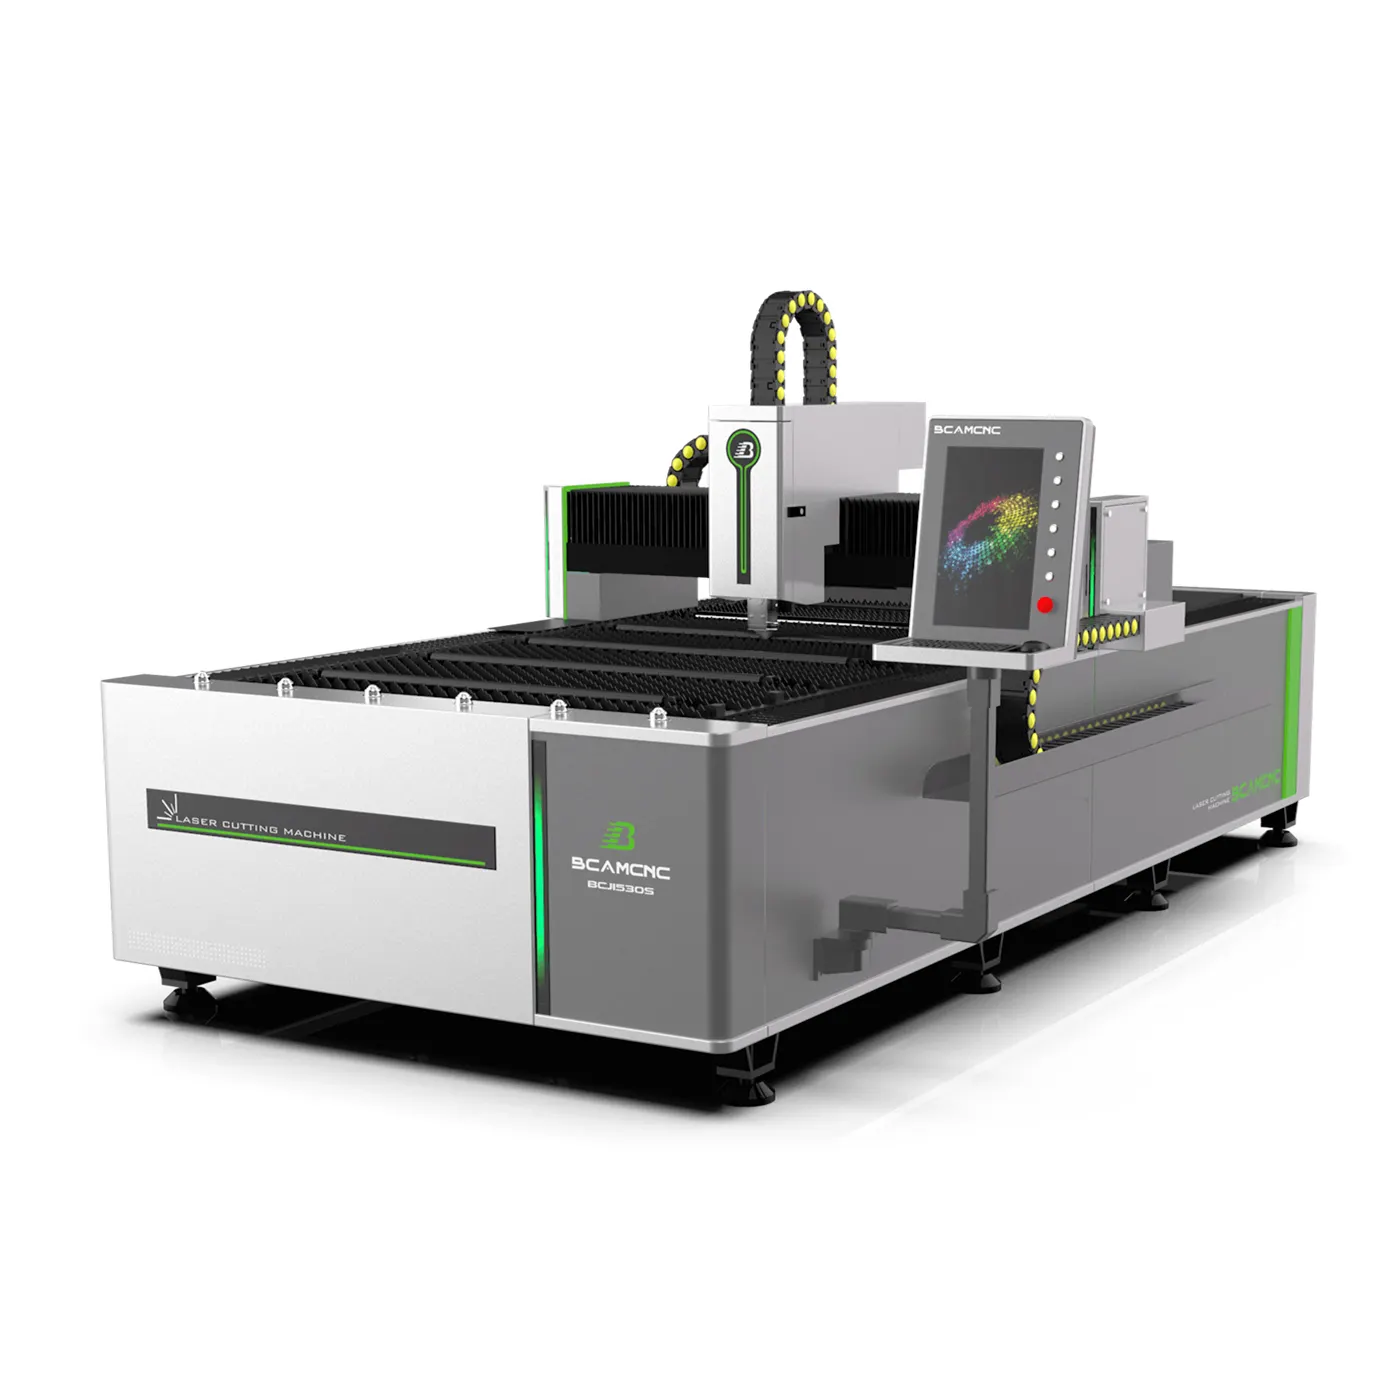 경제적 인 cnc 섬유 레이저 커팅 머신 3kw 6kw 금속 레이저 커터 스틸 커팅 머신 판매